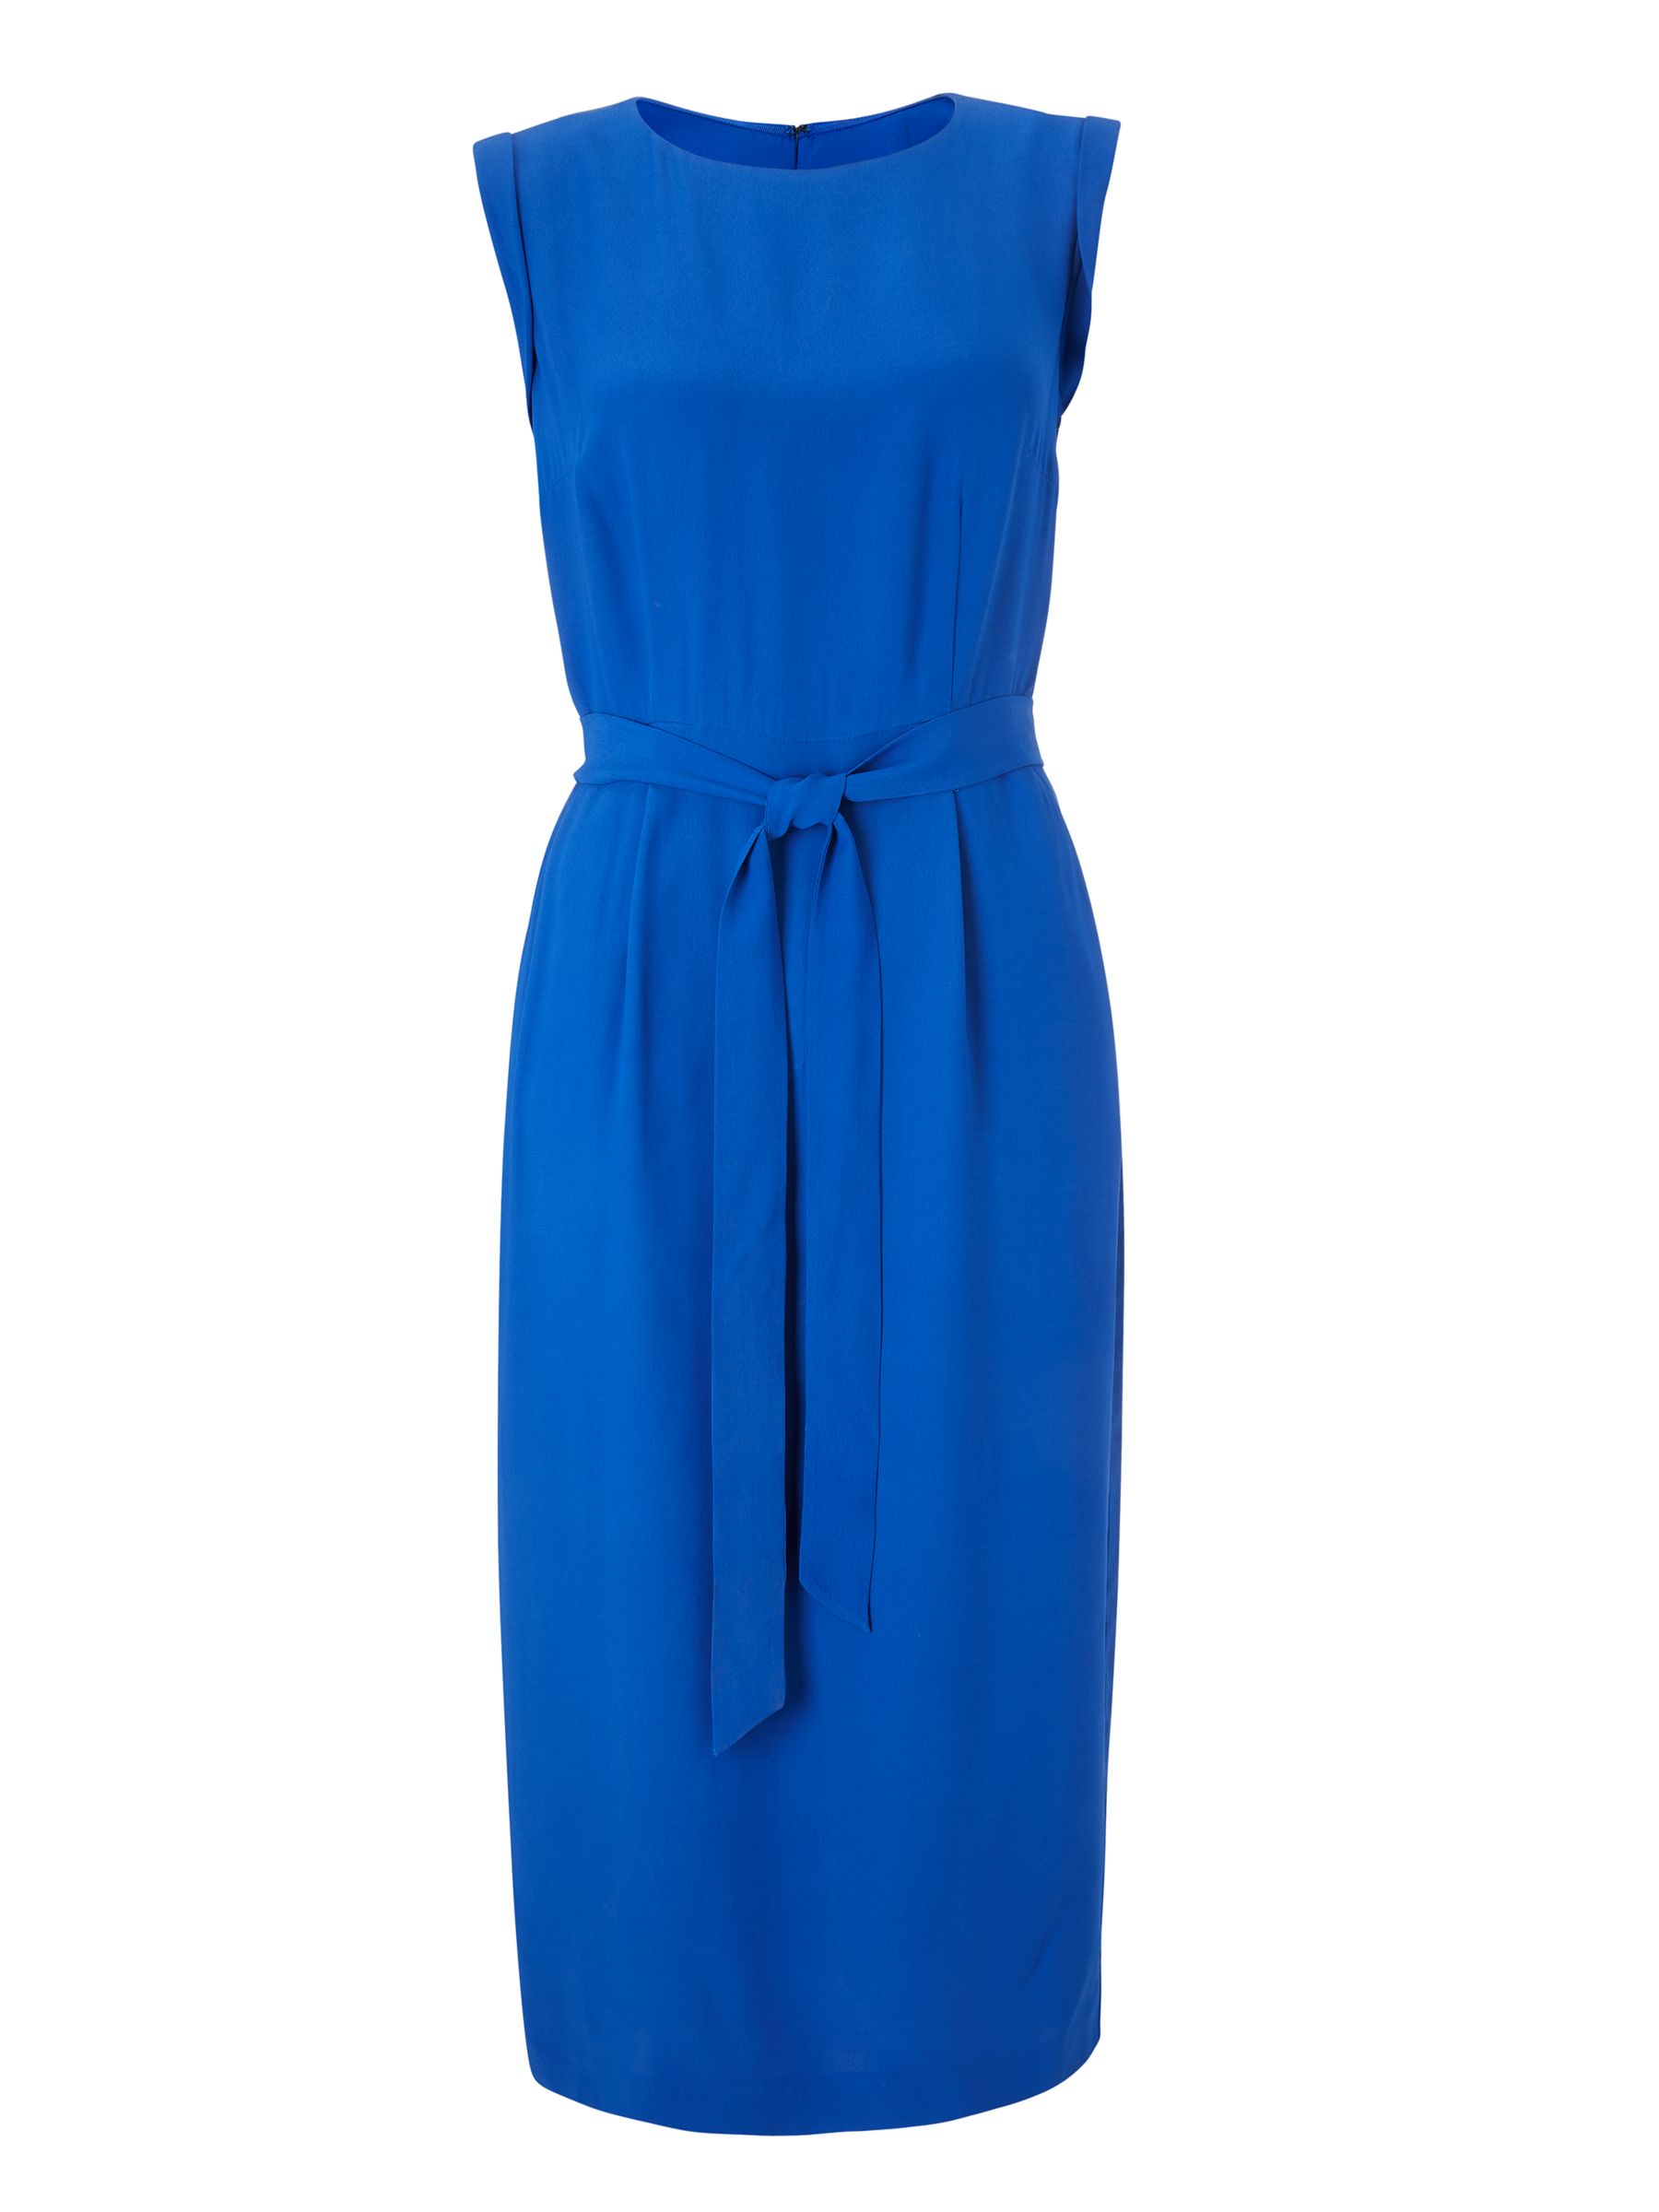 Boden Camille Tie Waist Midi Dress, Blue